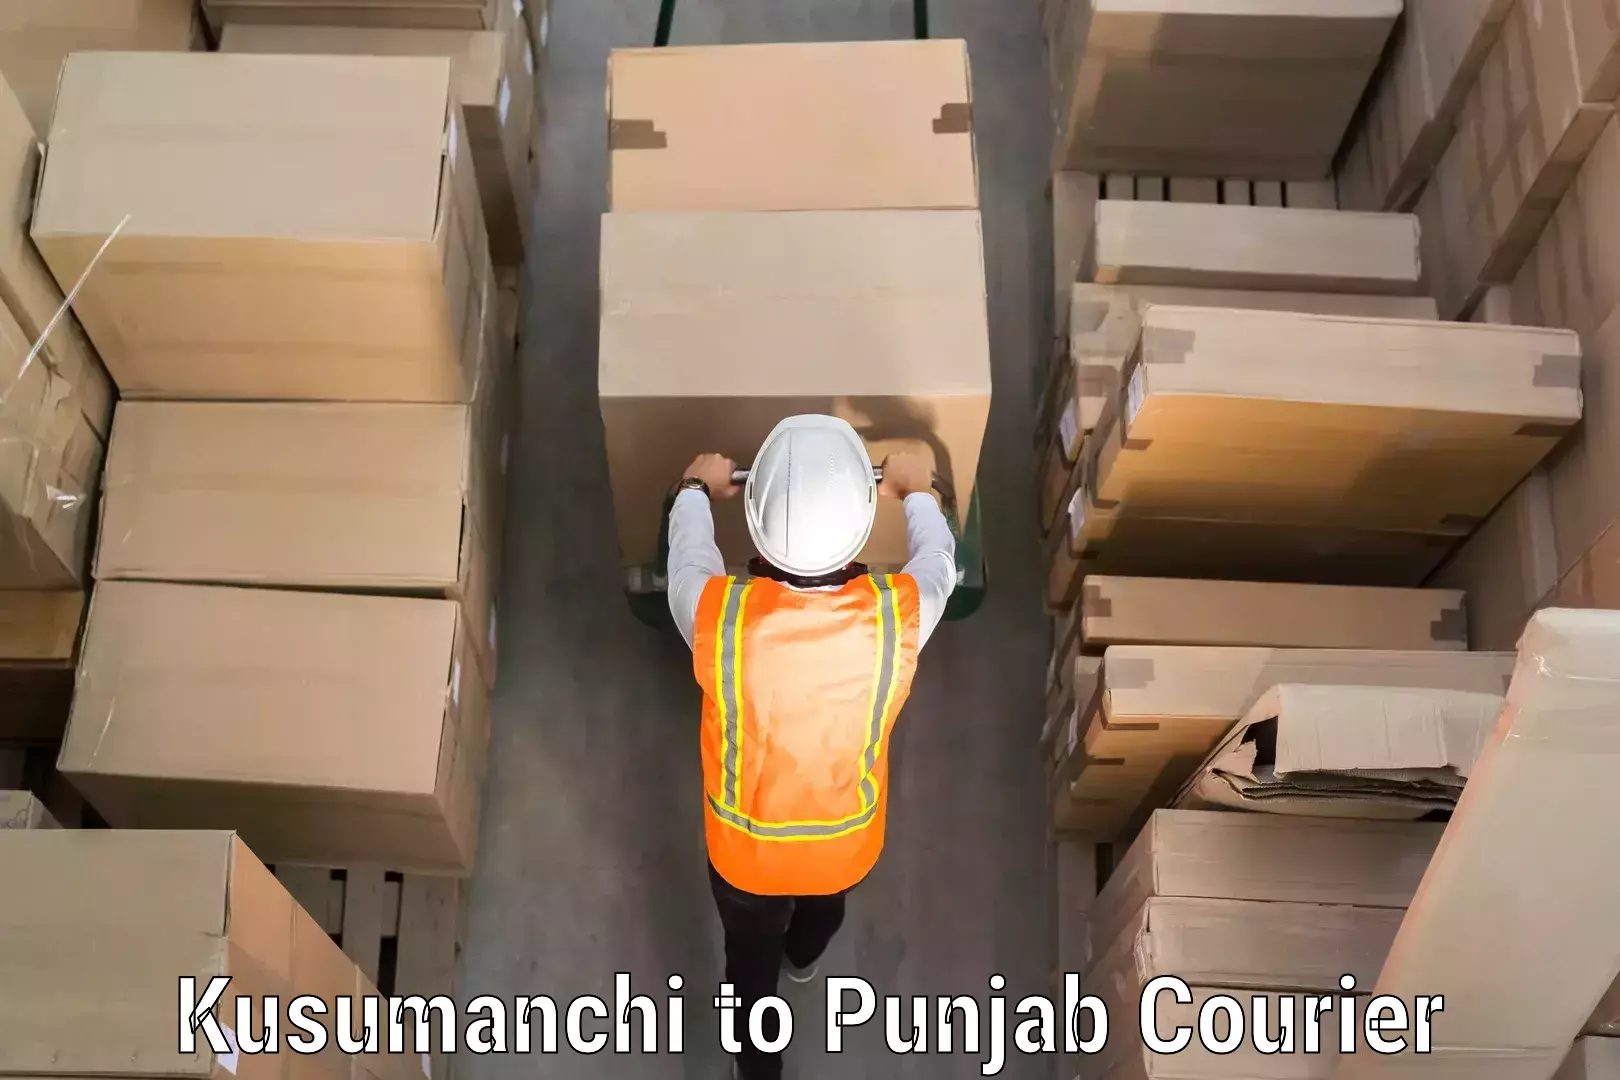 Electronic items luggage shipping Kusumanchi to Punjab